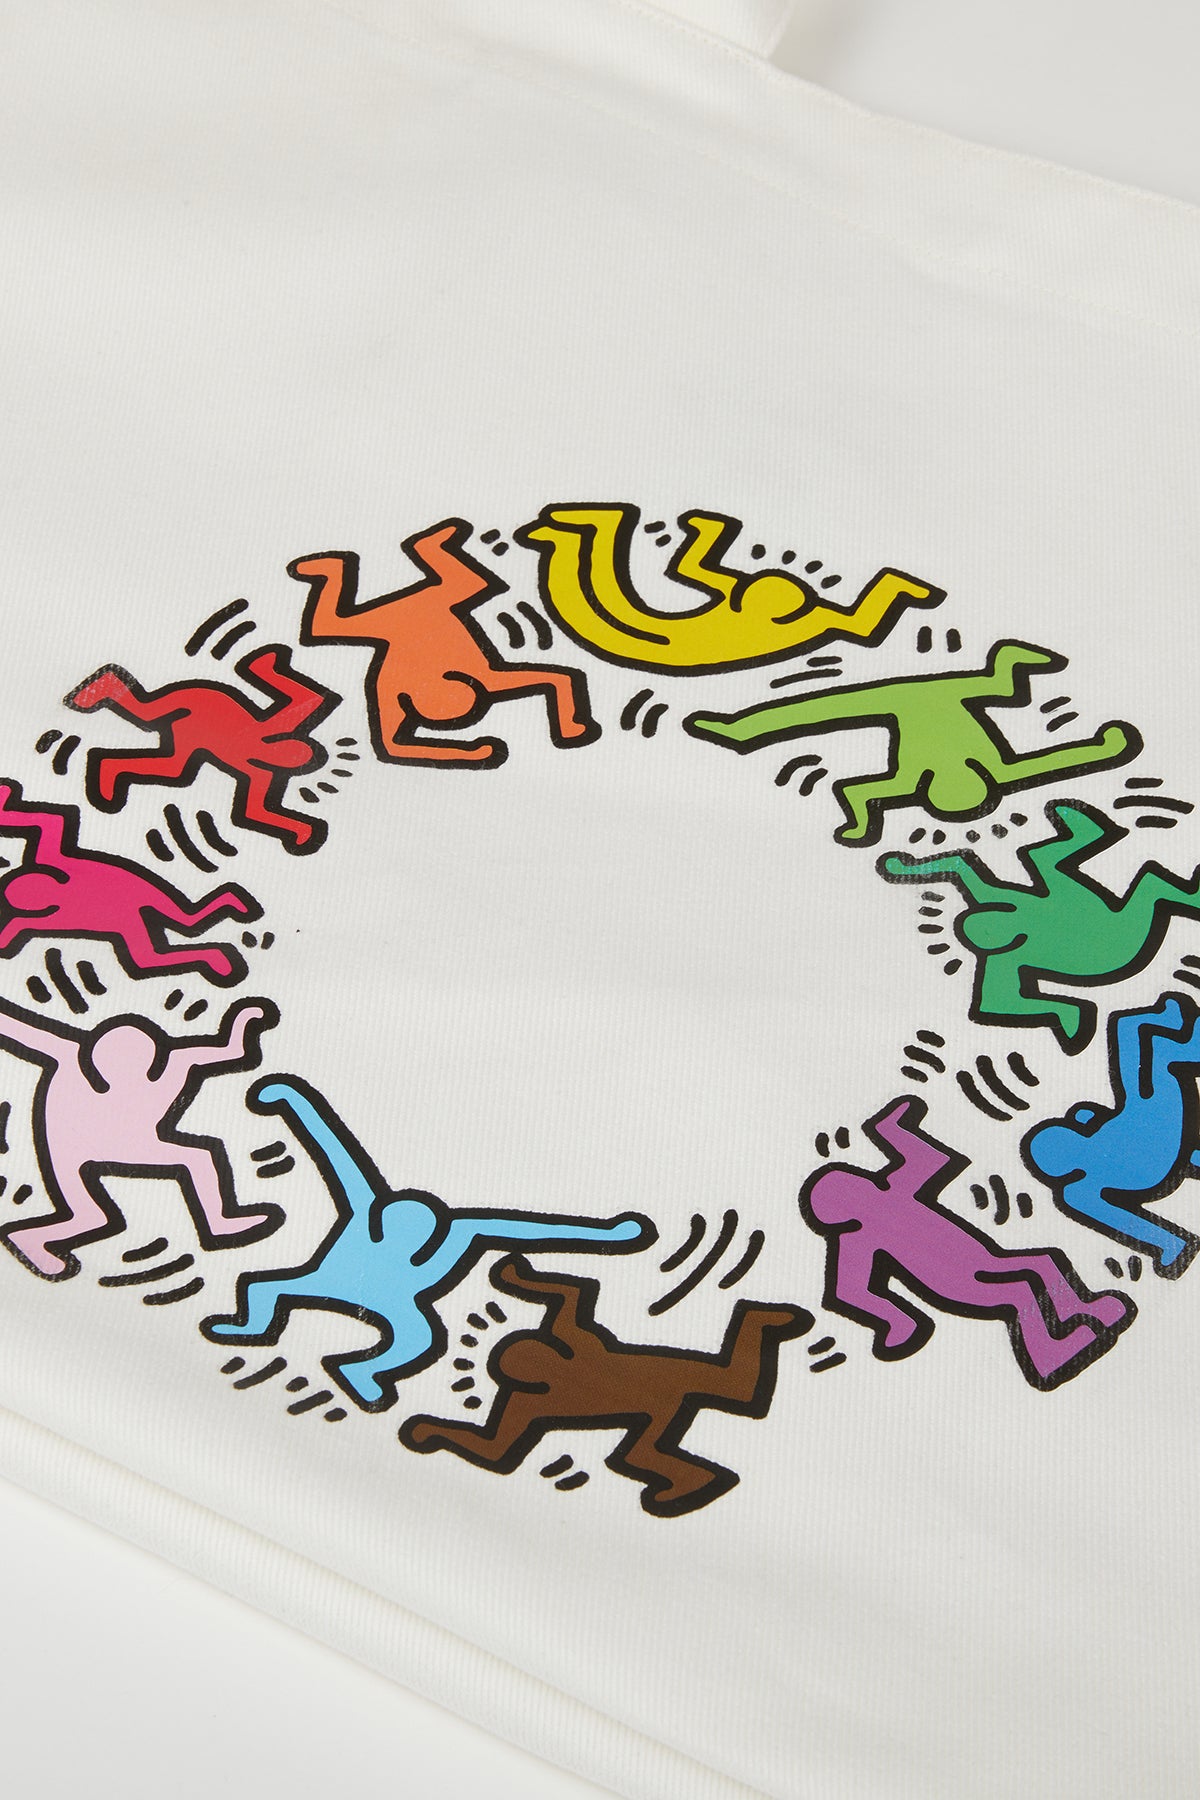 Keith Haring People Maxi Allday Çanta - Beyaz